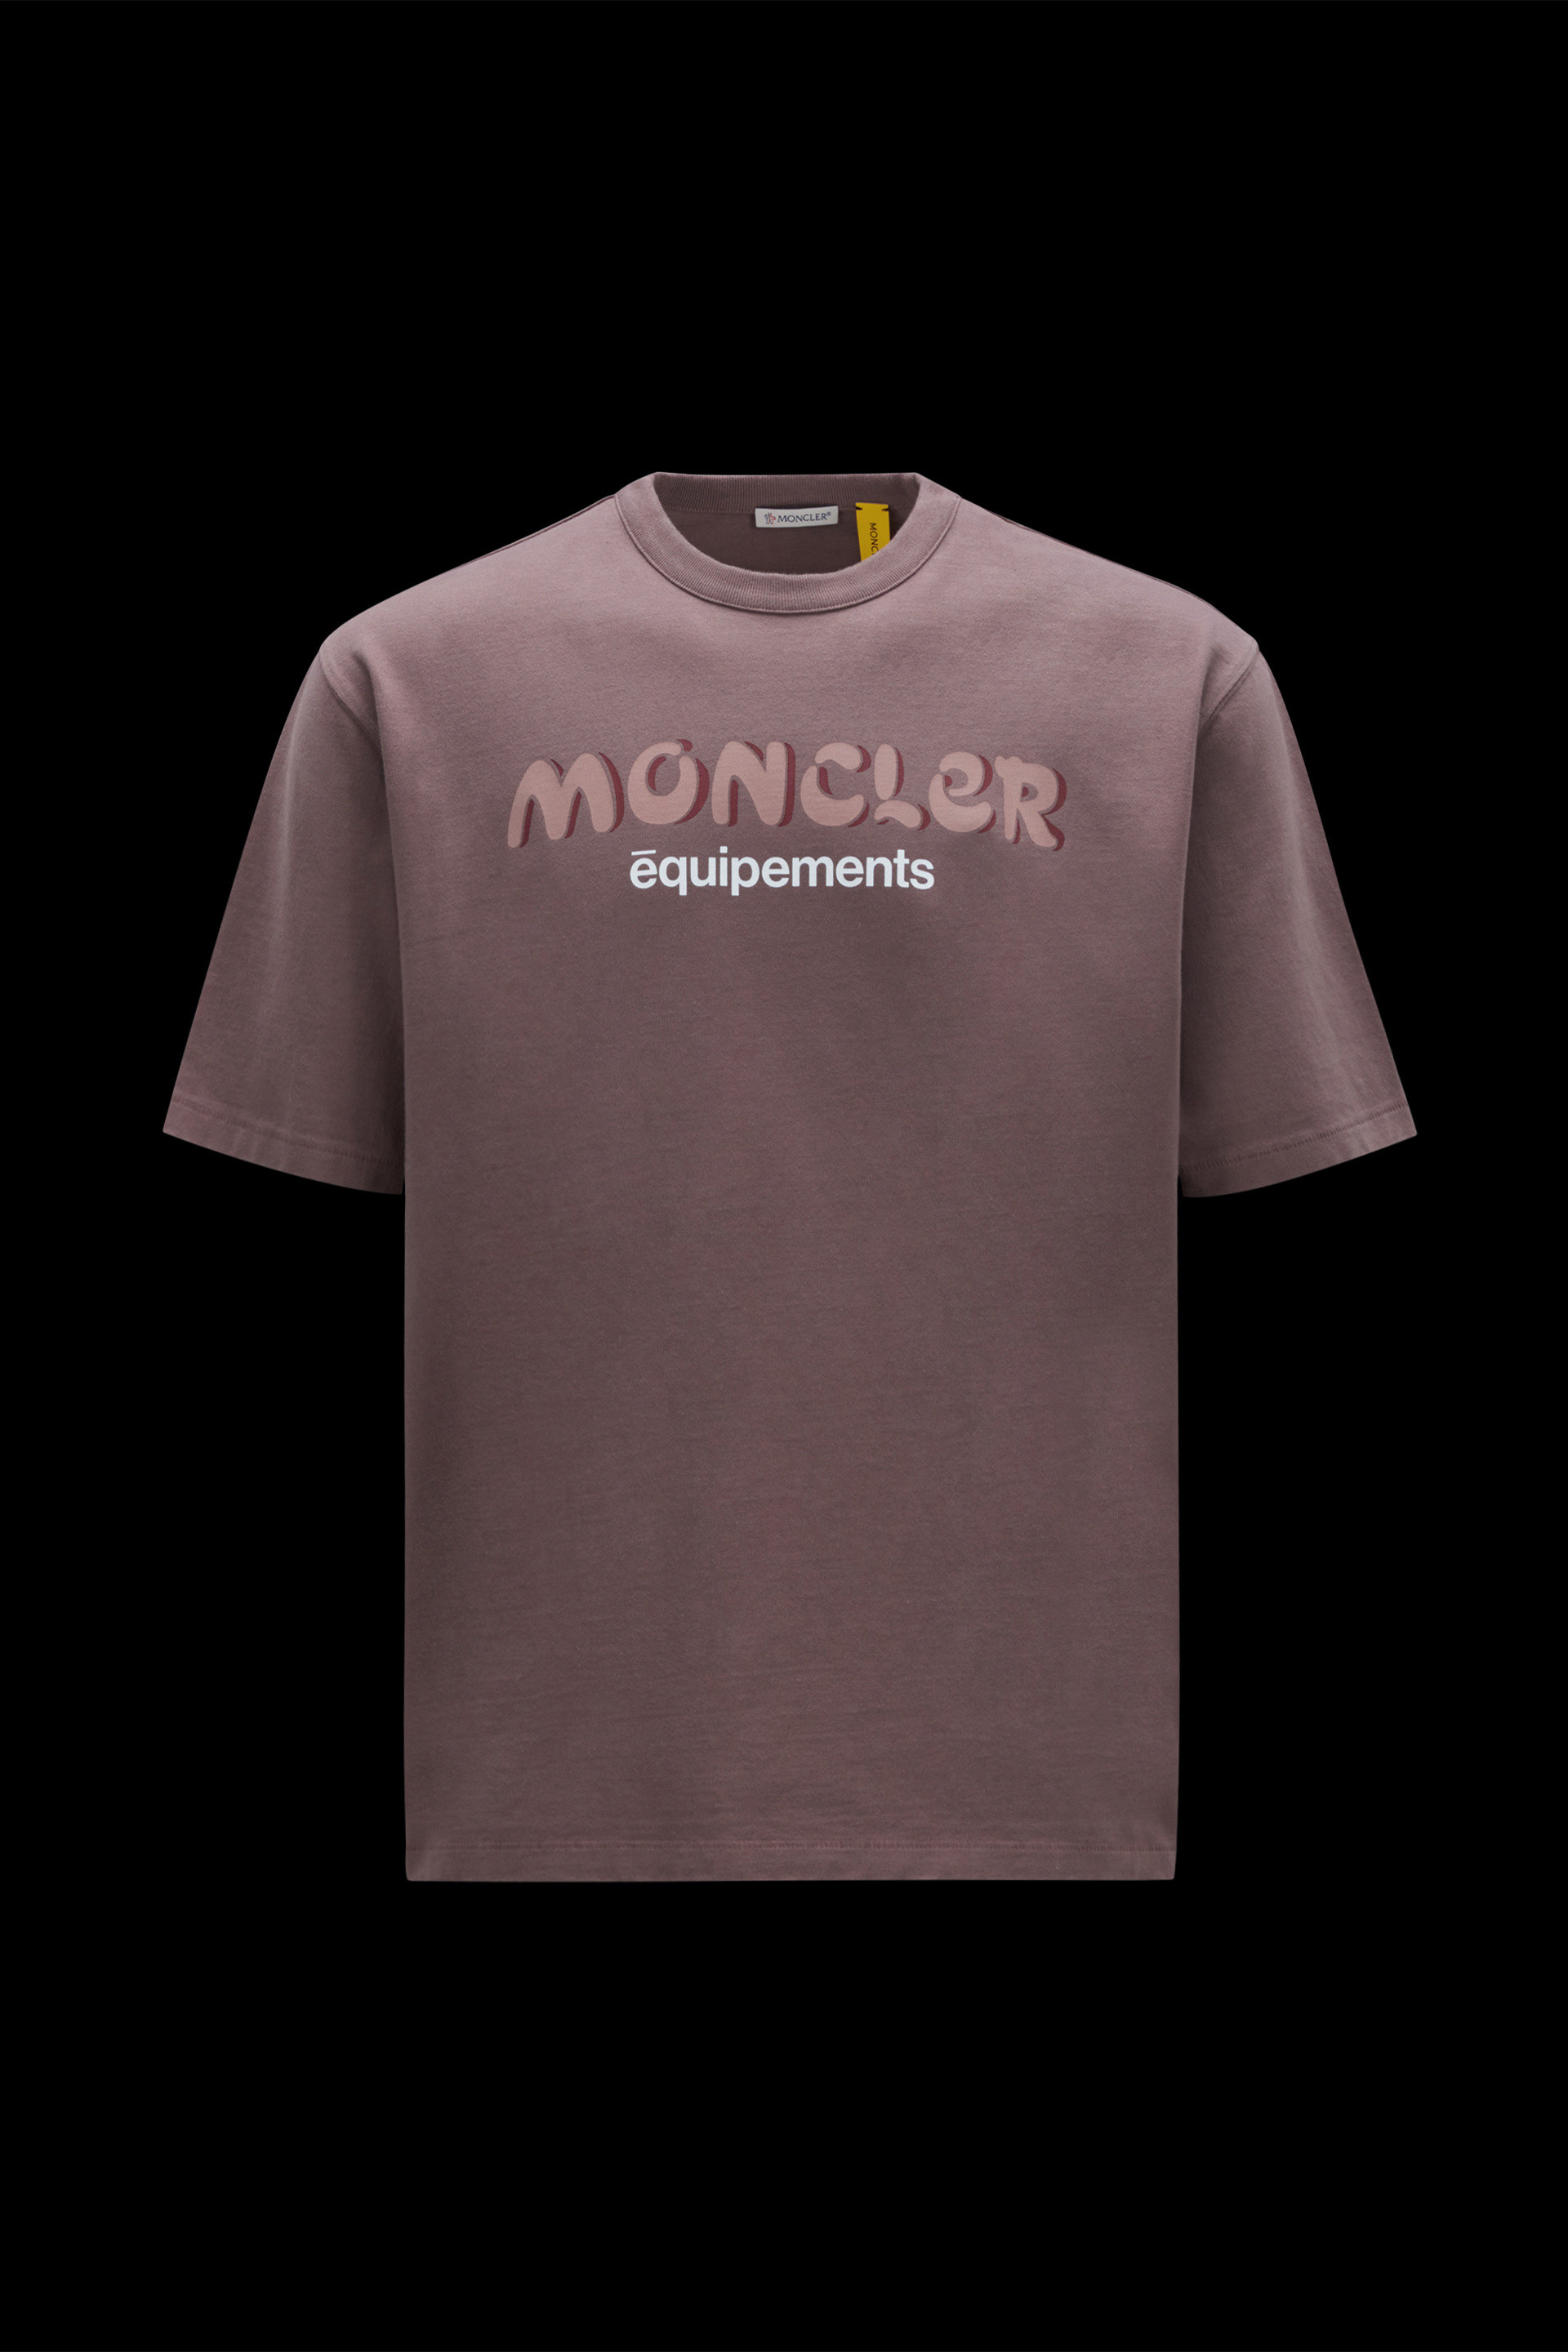 ライトピンク Tシャツ : Moncler x Salehe Bembury 向けの Genius